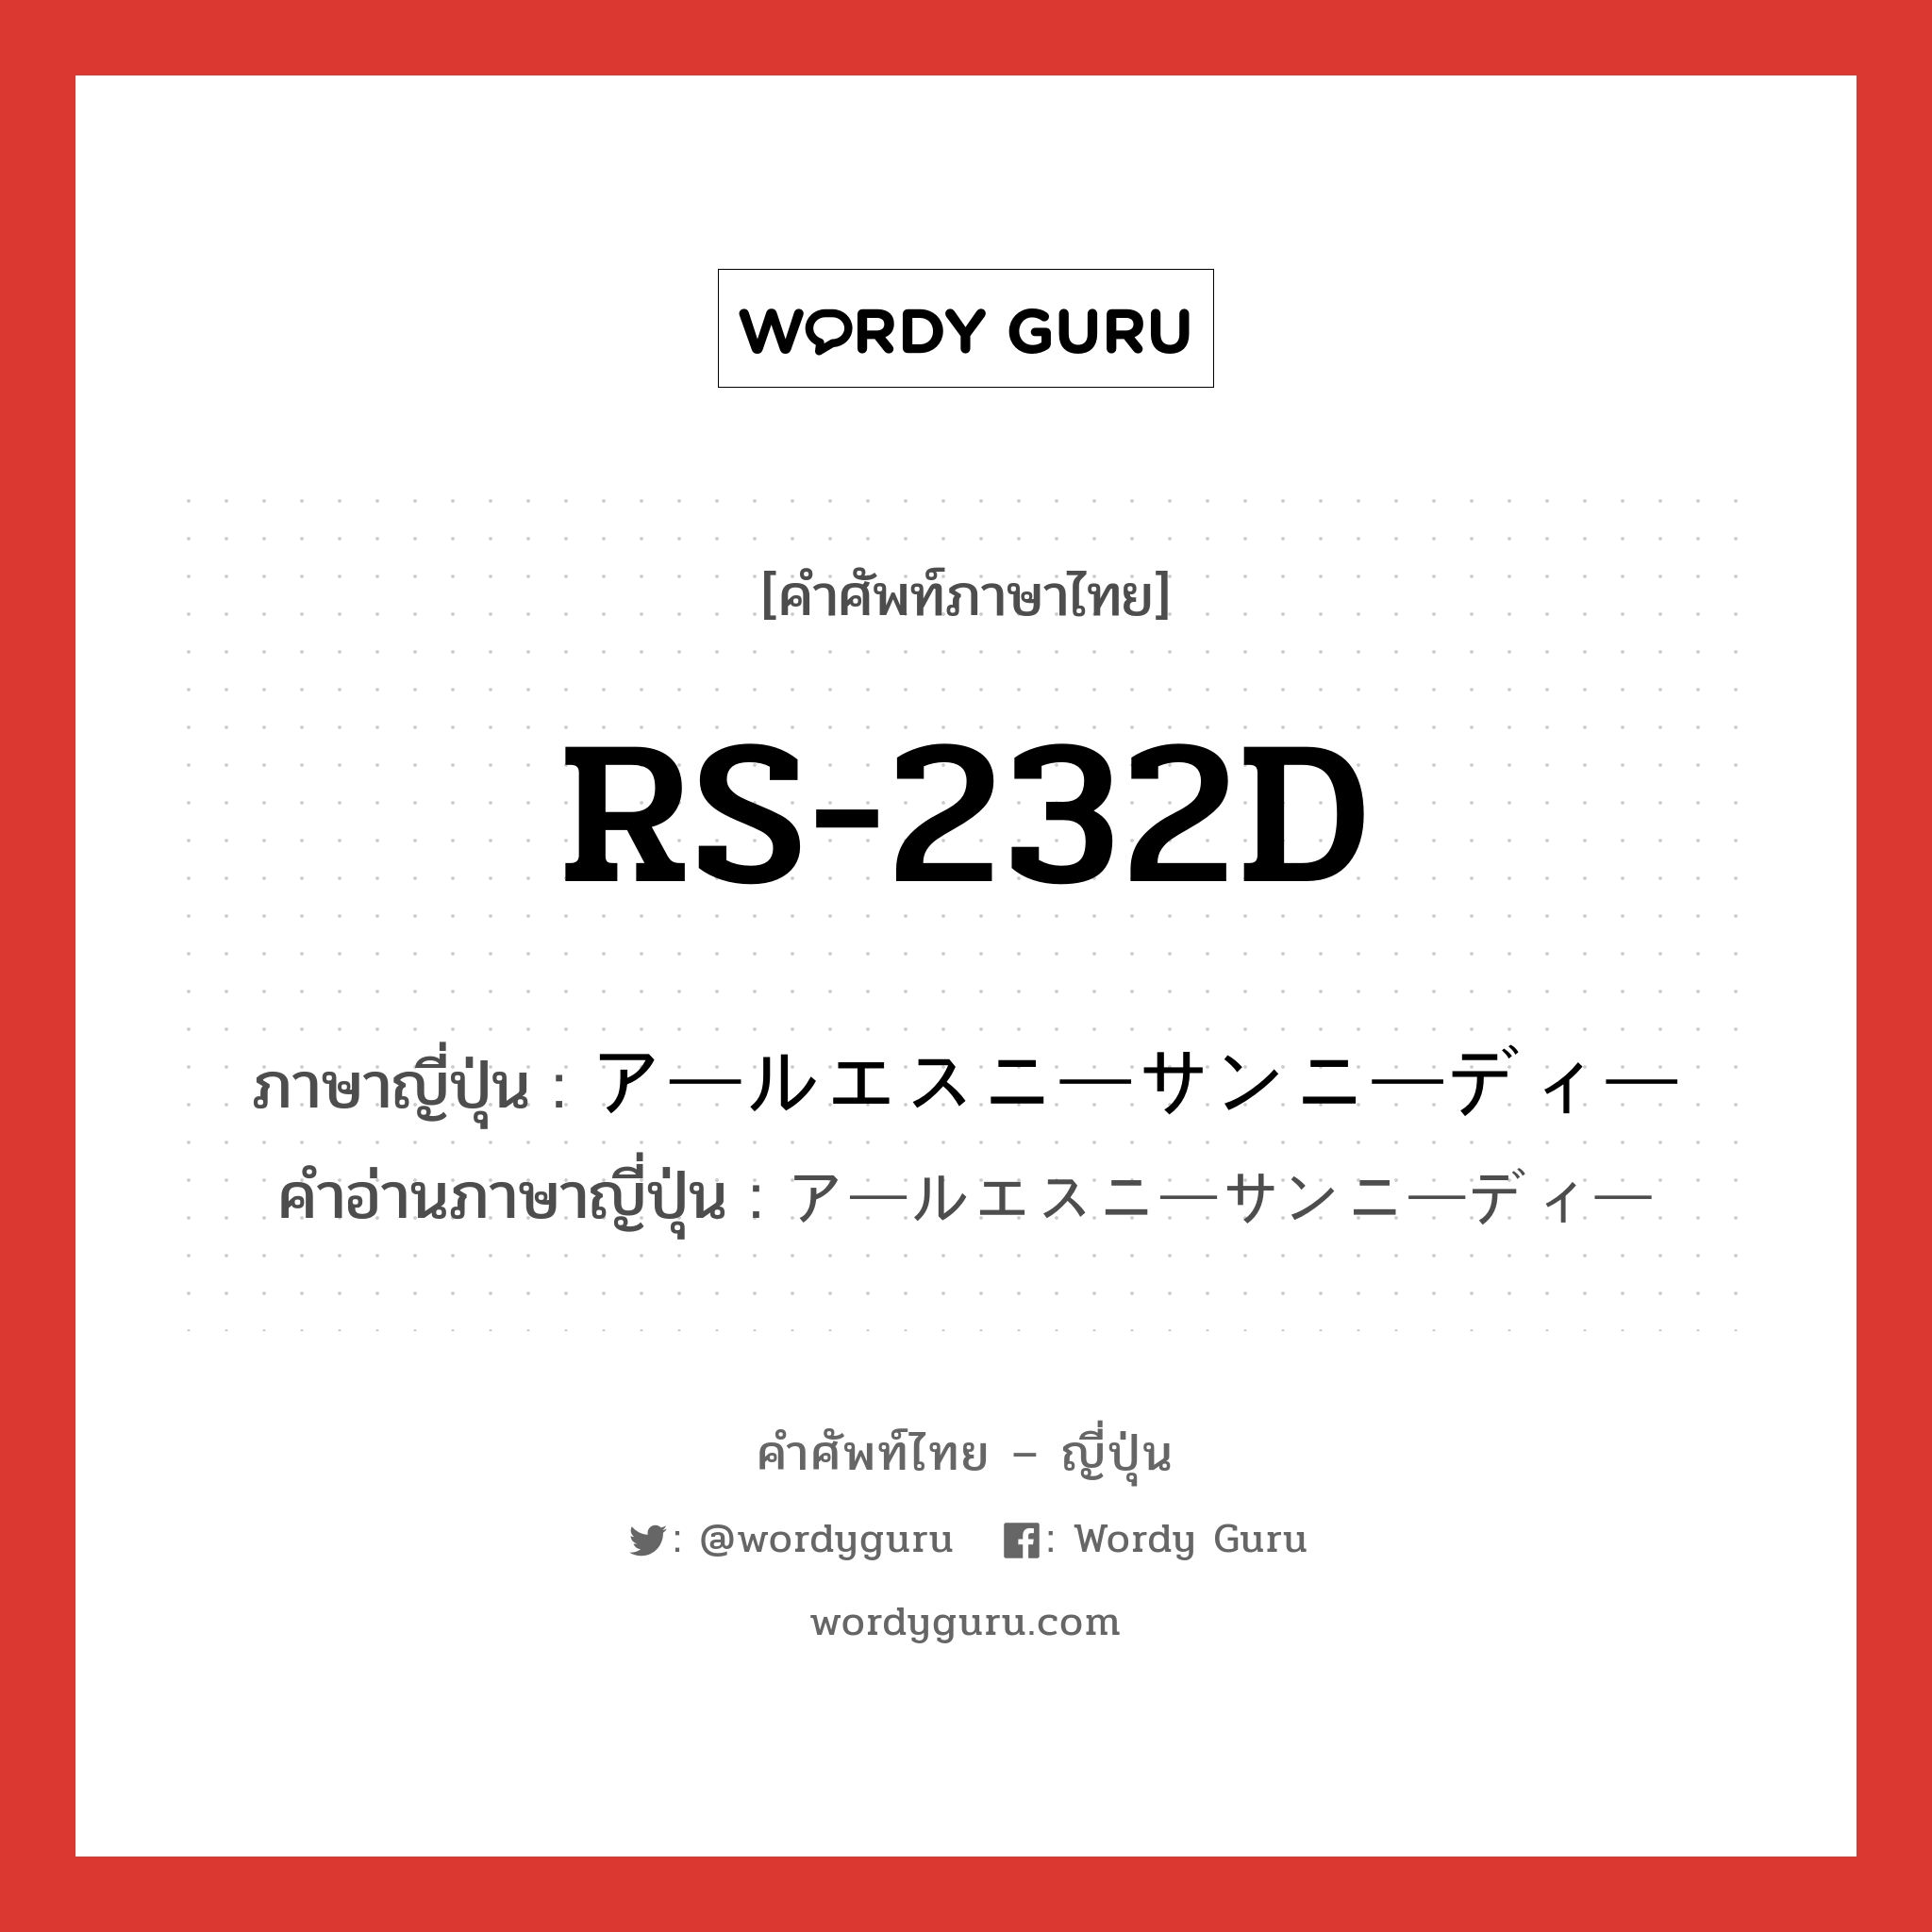 RS-232D ภาษาญี่ปุ่นคืออะไร, คำศัพท์ภาษาไทย - ญี่ปุ่น RS-232D ภาษาญี่ปุ่น アールエスニーサンニーディー คำอ่านภาษาญี่ปุ่น アールエスニーサンニーディー หมวด n หมวด n